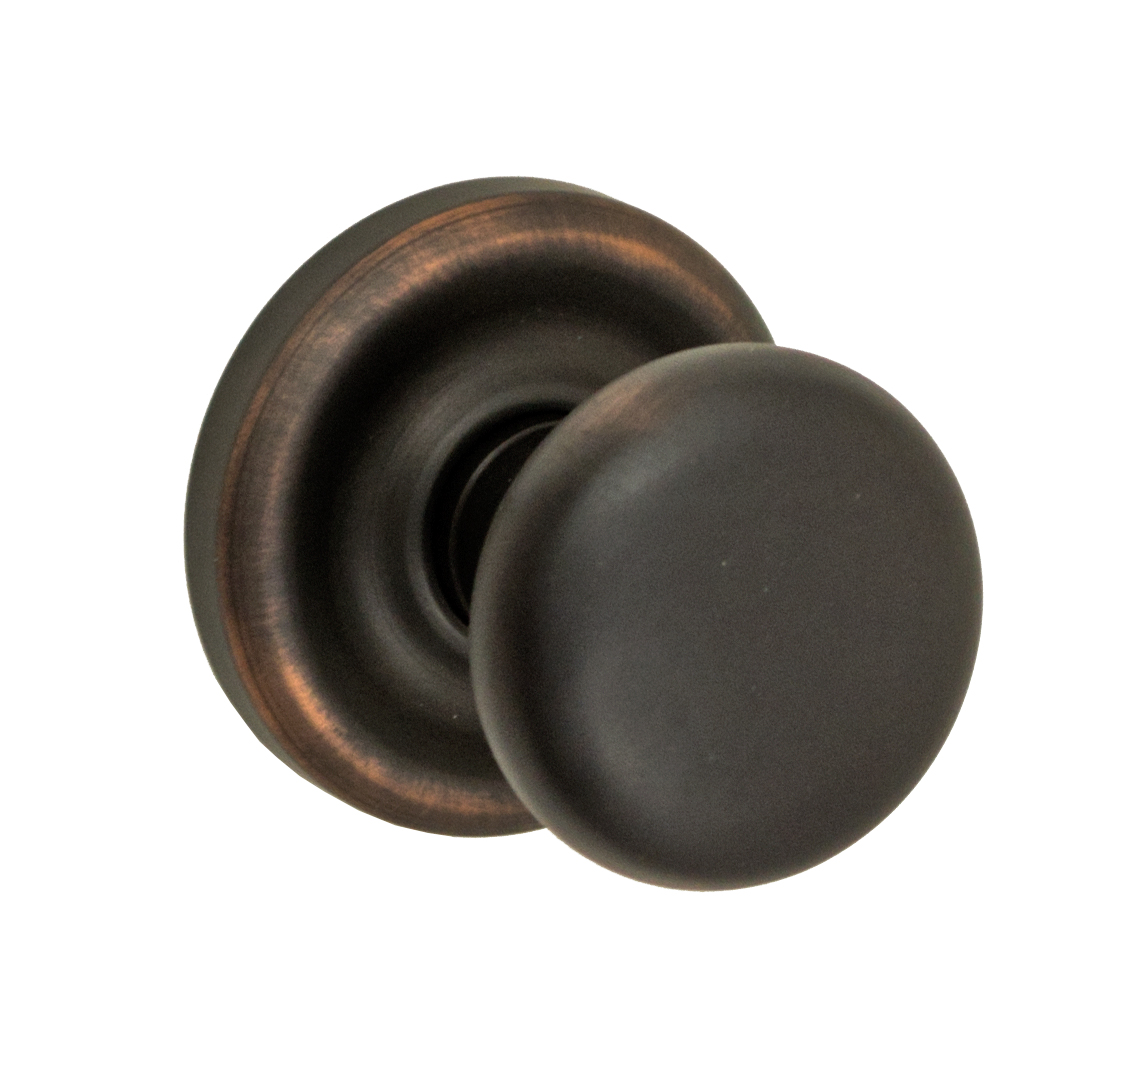 oil rubbed bronze door knobs photo - 15